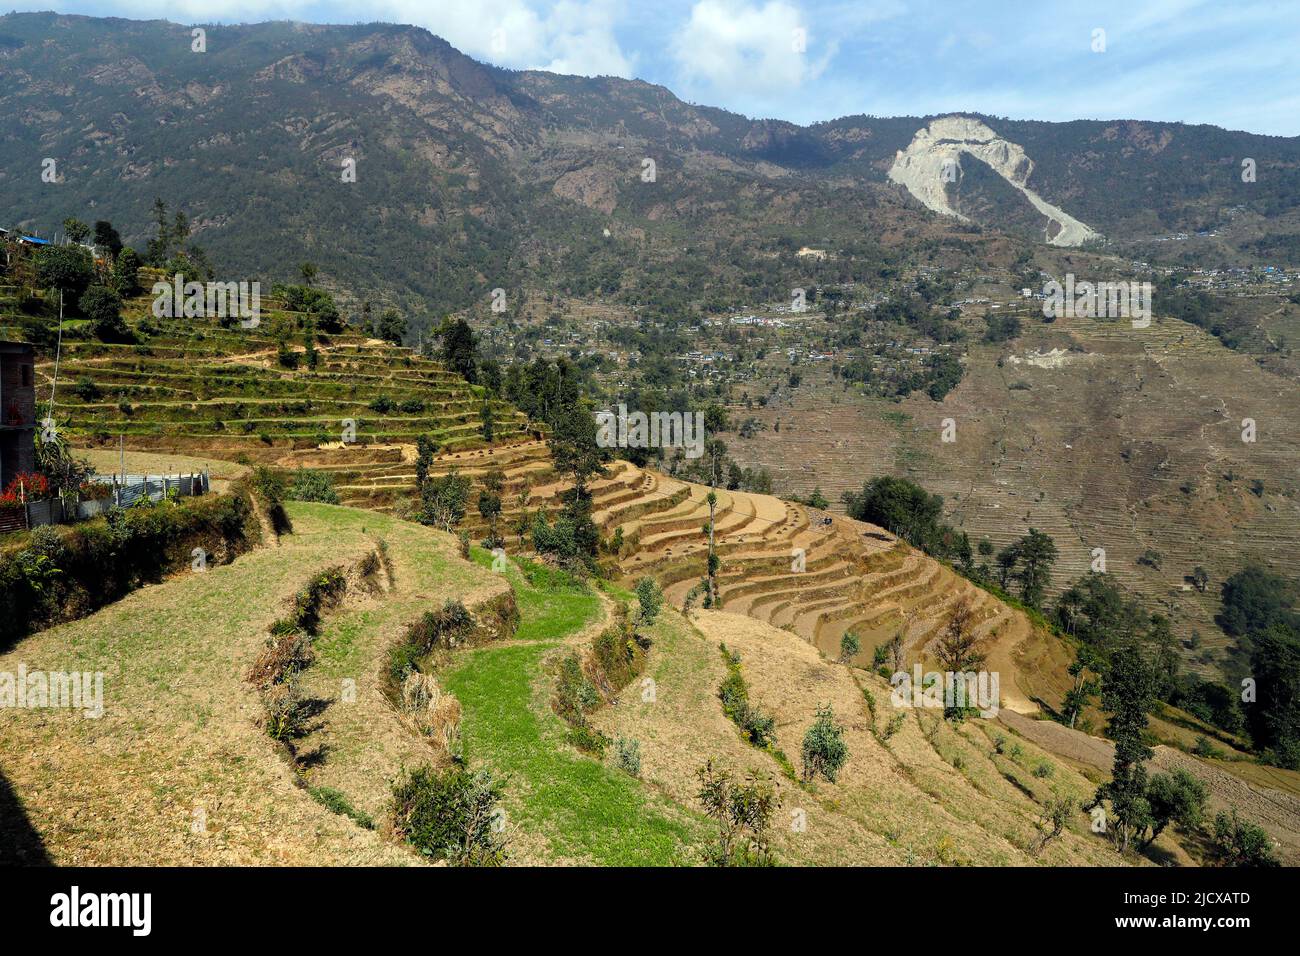 Villaggio di montagna e agricoltura tradizionale, Lapilang, Dolakha, Nepal, Asia Foto Stock